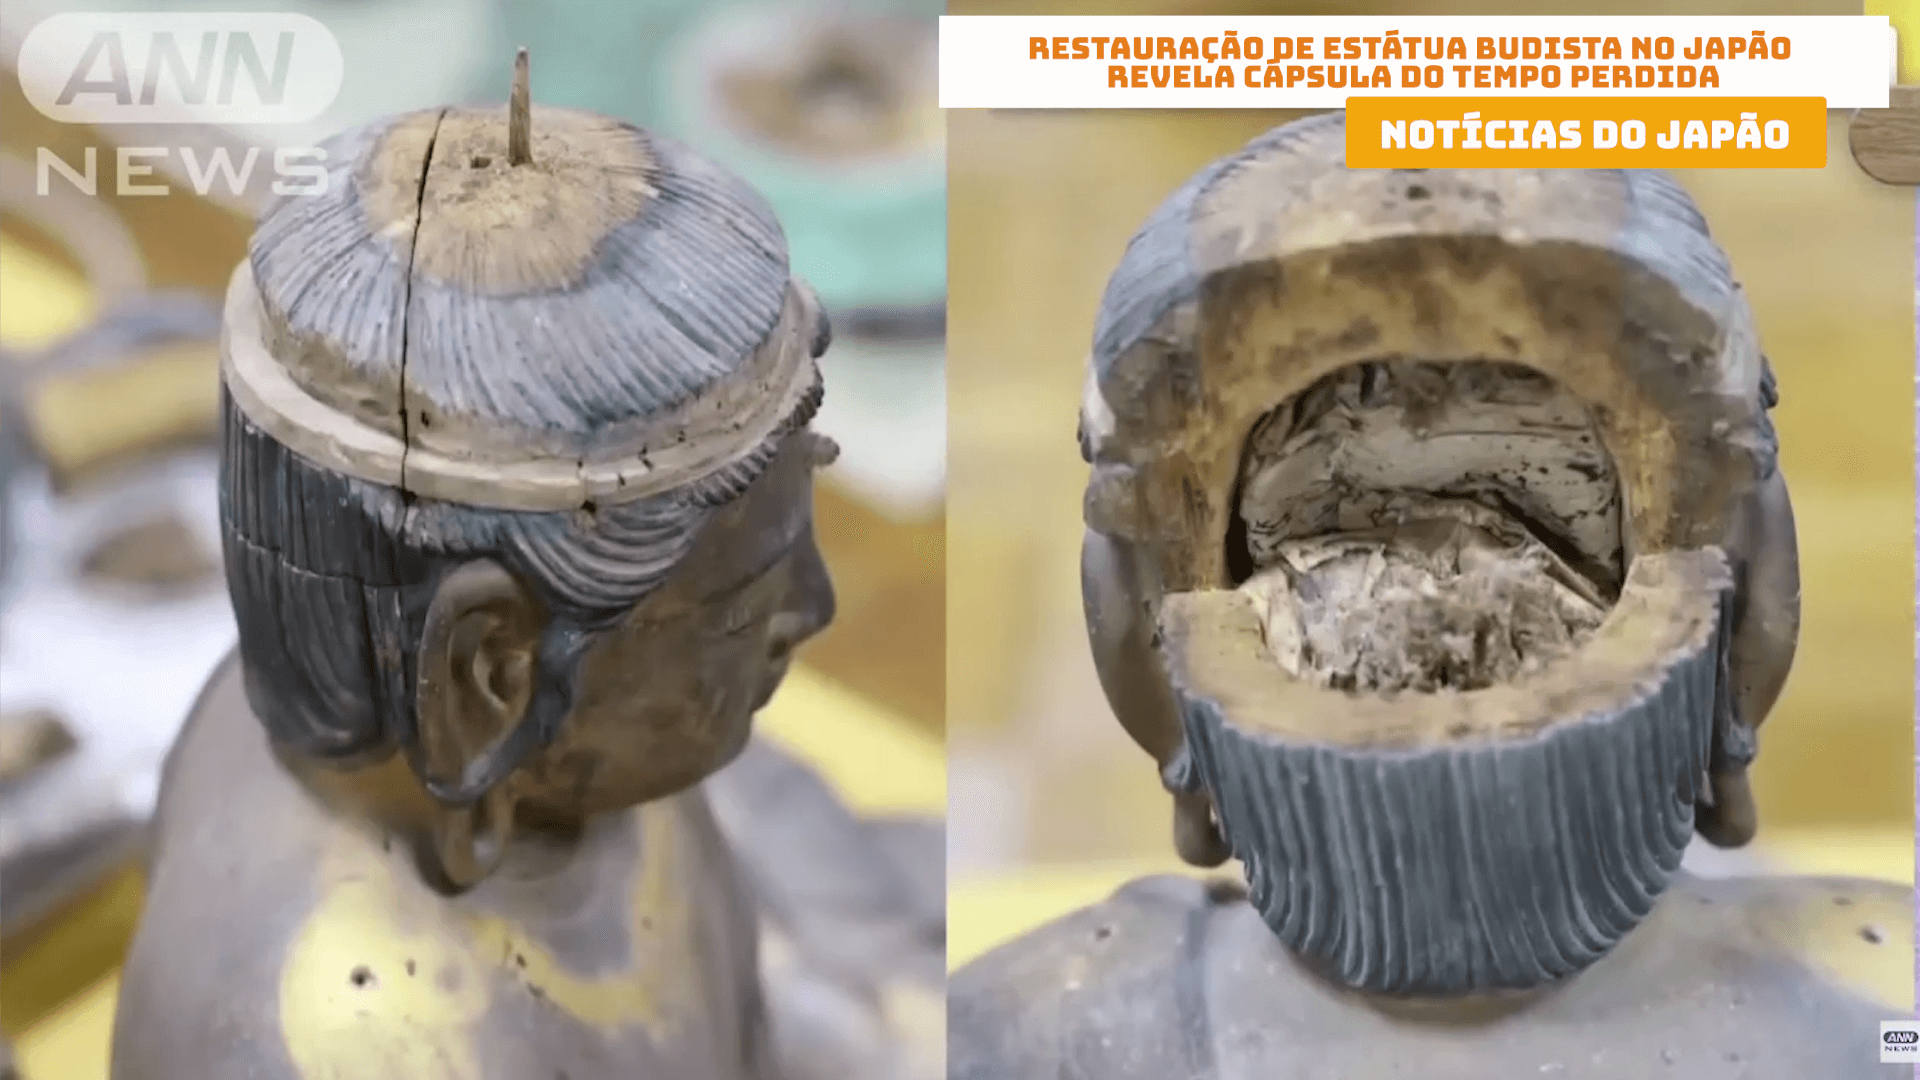 Restauração de estátua budista no Japão revela cápsula do tempo perdida